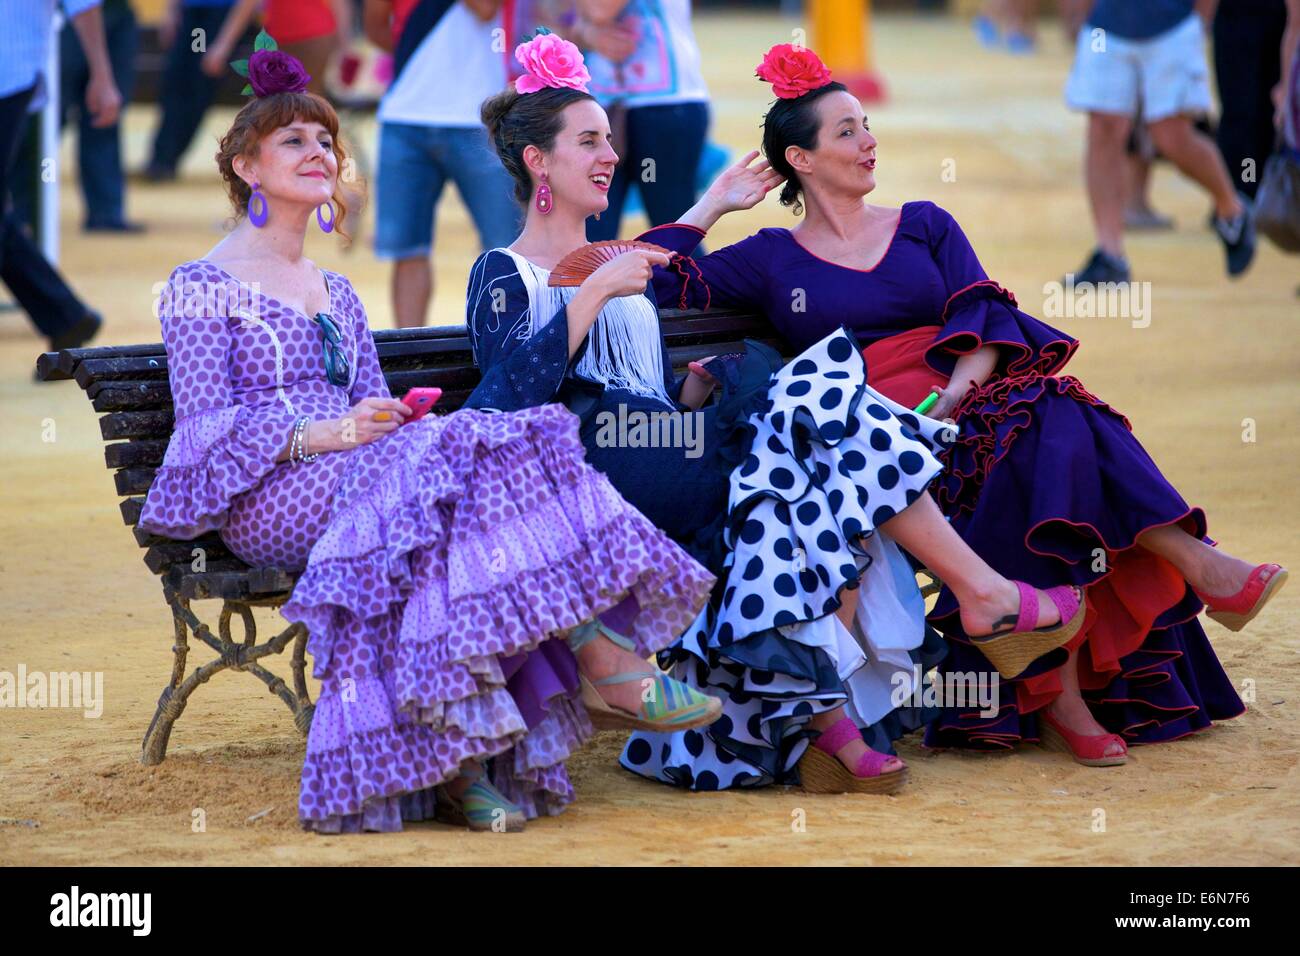 Annual Horse Fair, Jerez de la Frontera, Cadiz Province, Andalucia, Spain, South West Europe Stock Photo